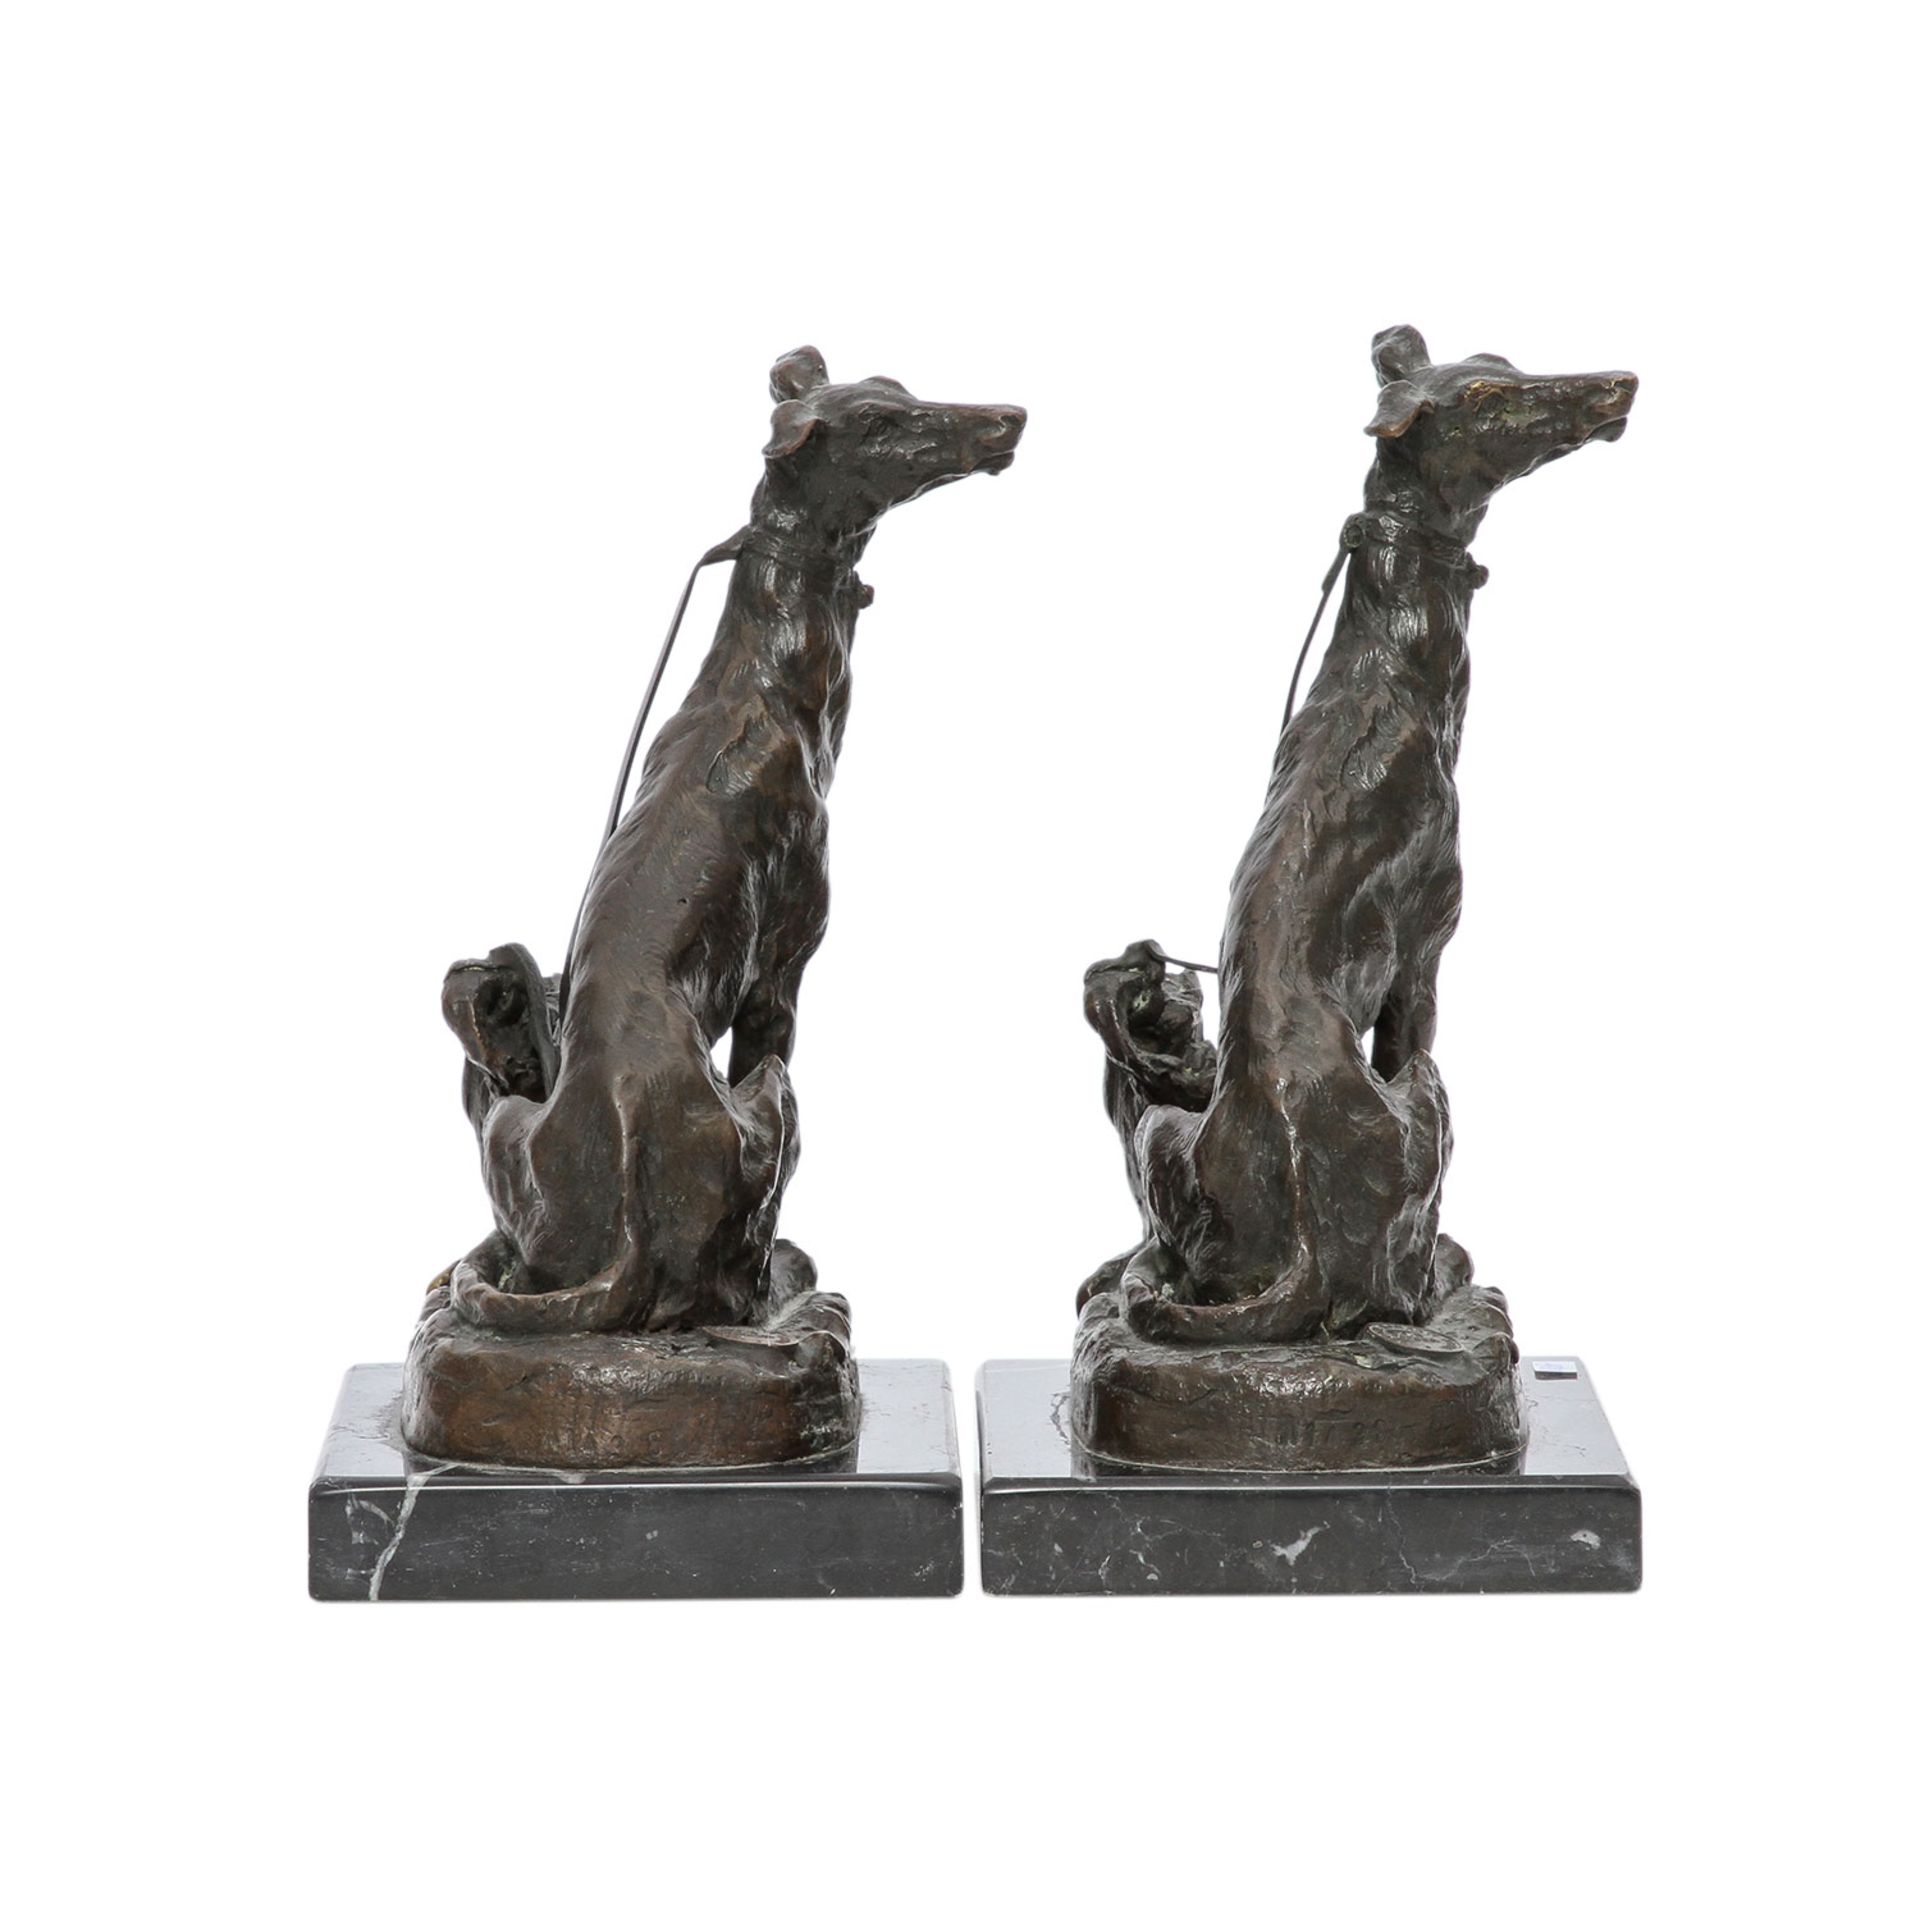 Nach FRÉMIET, Emmanuel (1824-1910) Paar Figuren 'Windhund', 20. Jhd. Bronze, sitzender Windhund, - Image 5 of 7